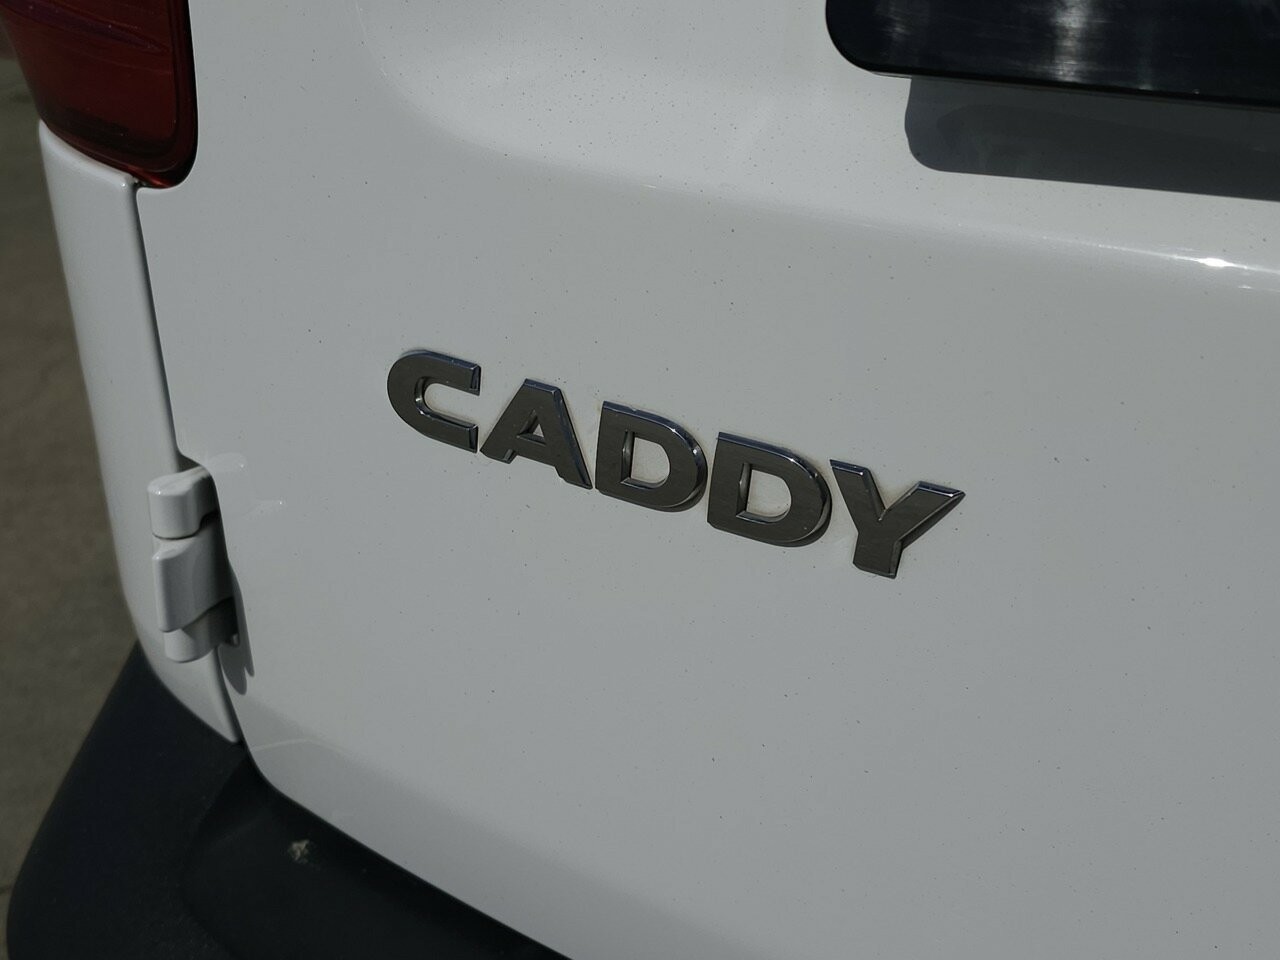 Volkswagen Caddy image 3